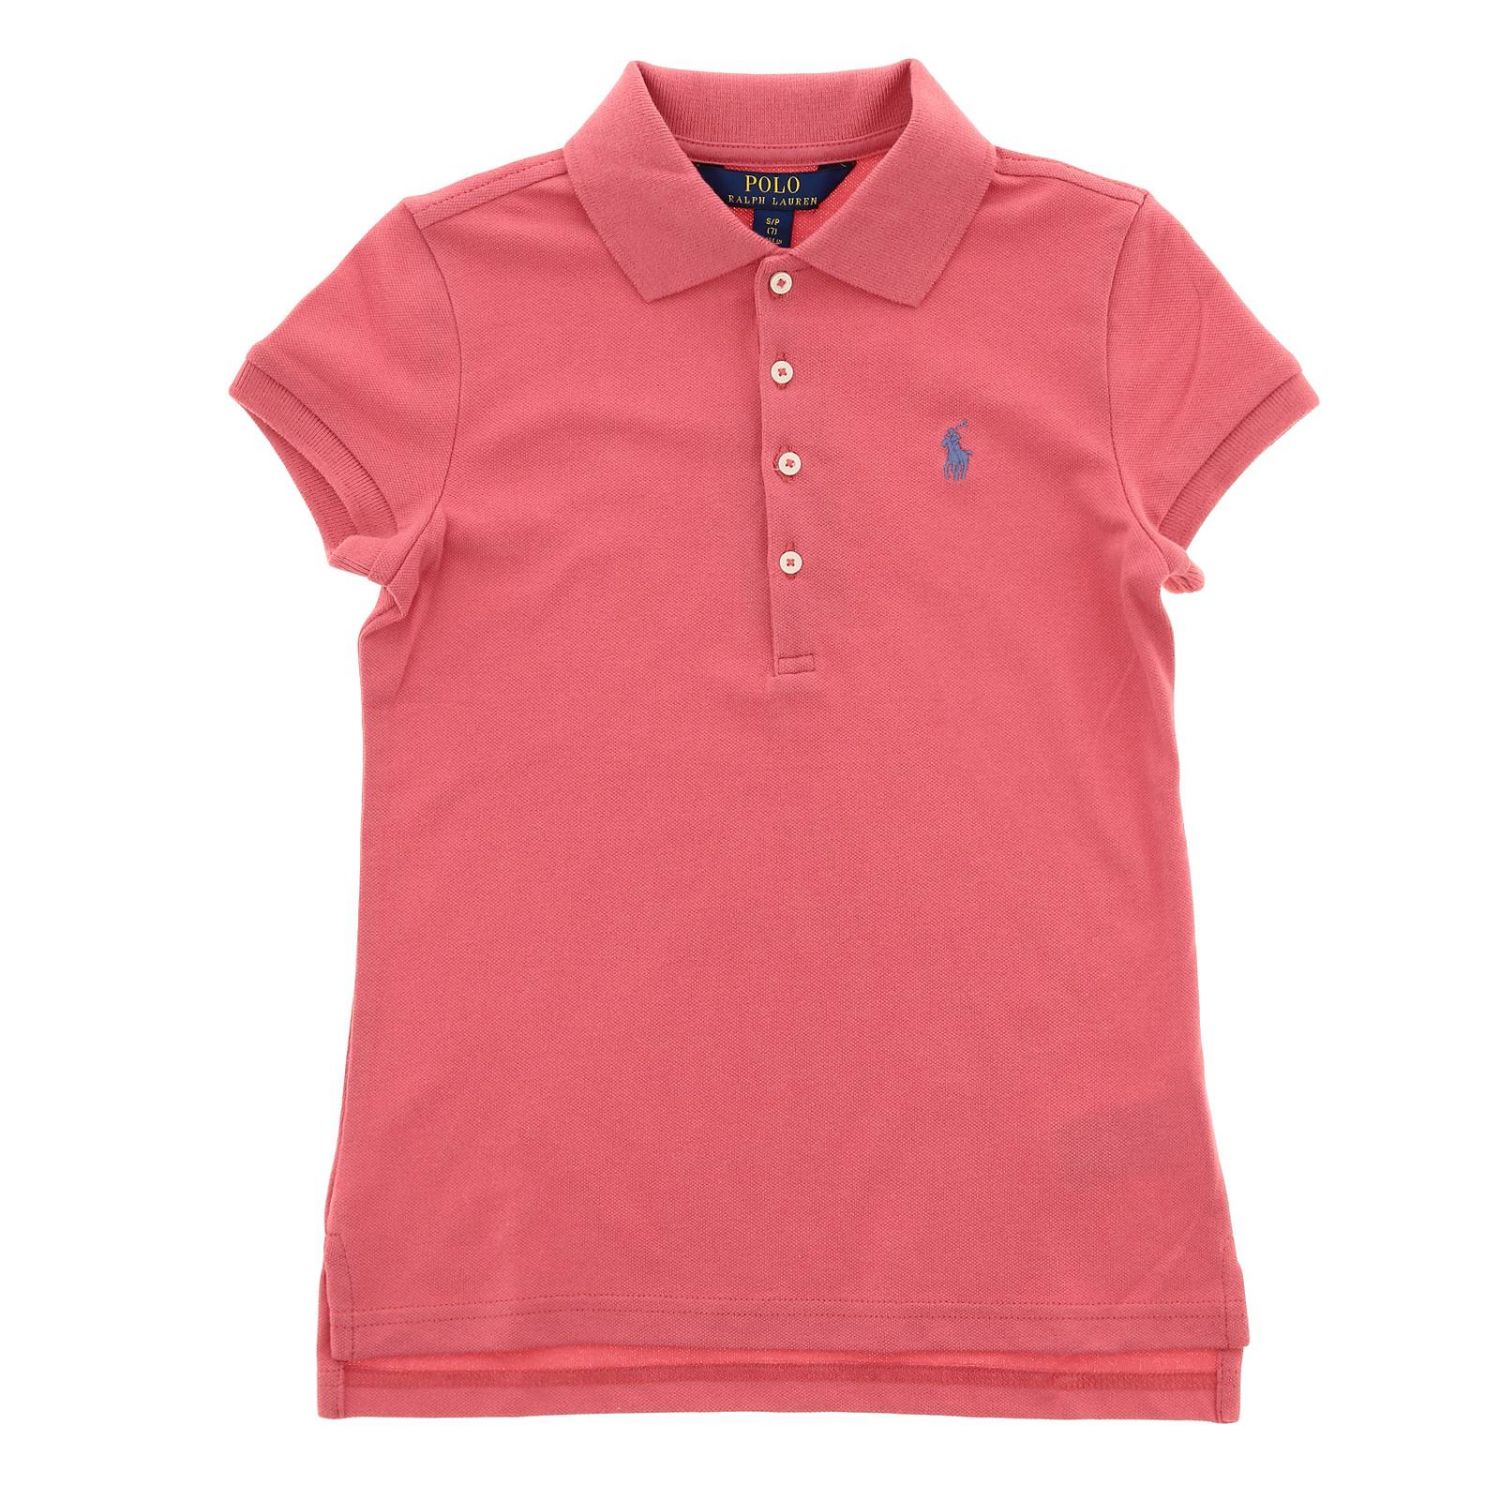 Polo Ralph Lauren Girl Outlet: T-shirt kids | T-Shirt Polo Ralph Lauren ...